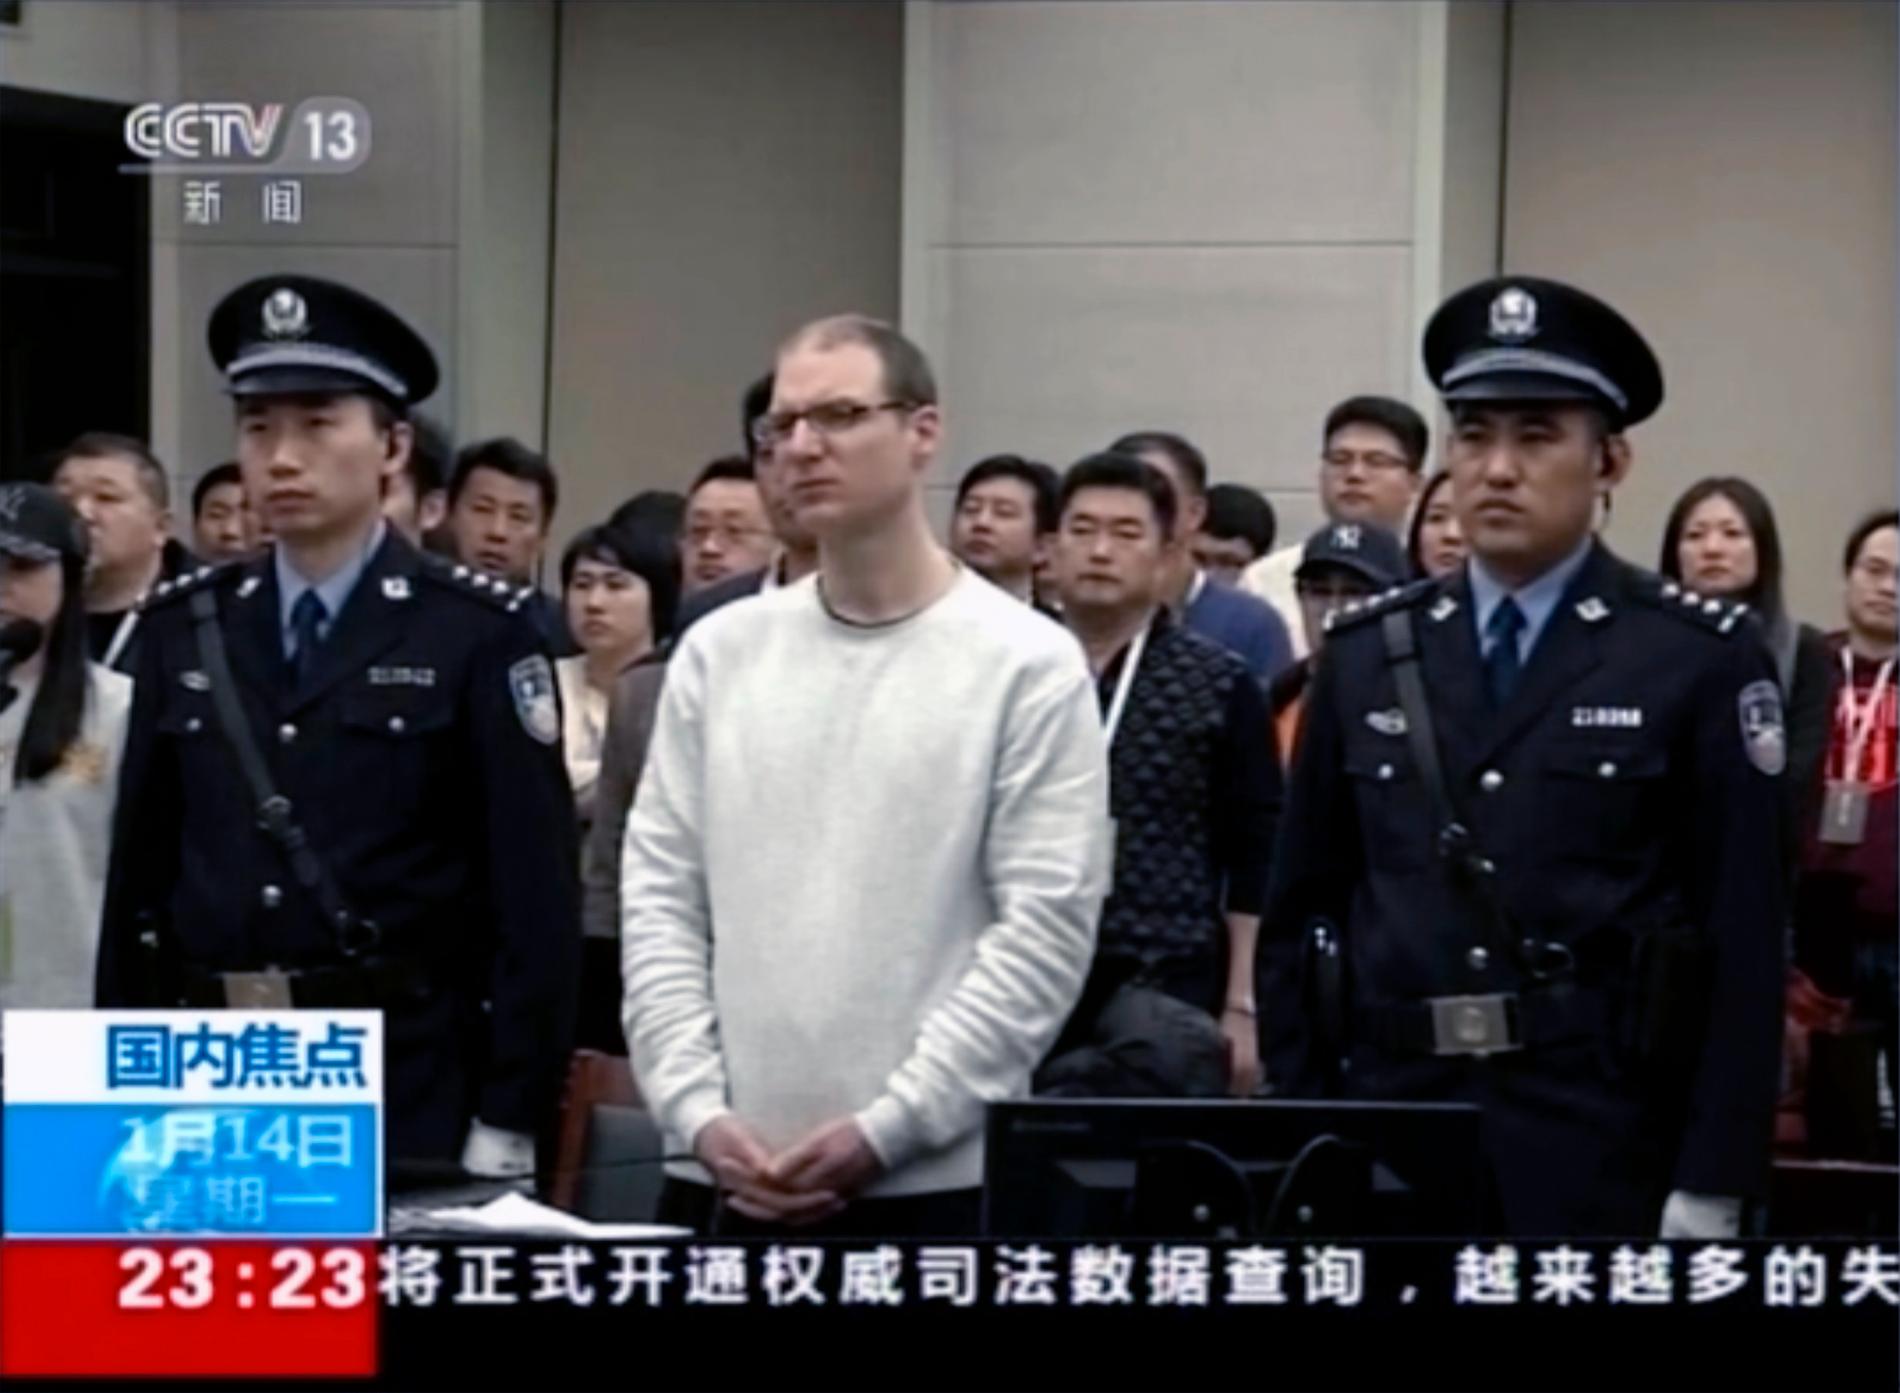 Kanadensaren Robert Lloyd Schellenberg i rätten. Tv-bilder från kinesiska CCTV.